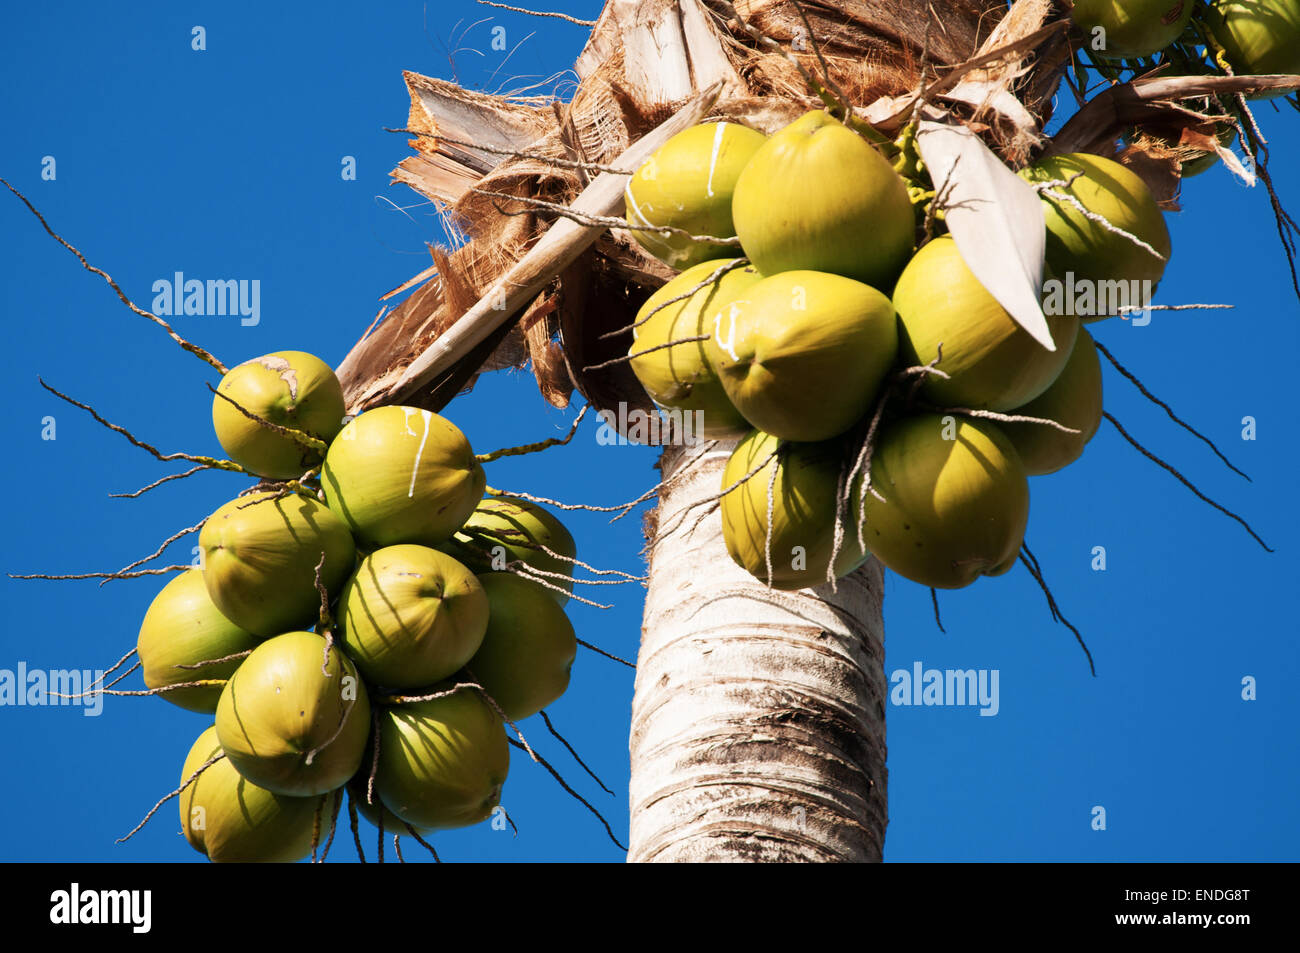 St Barth, St. Barths, Saint-Barthélemy, Französische Antillen, Niederländische Antillen, Karibik: Kokosnüsse hängen auf eine Kokospalme, Natur Stockfoto